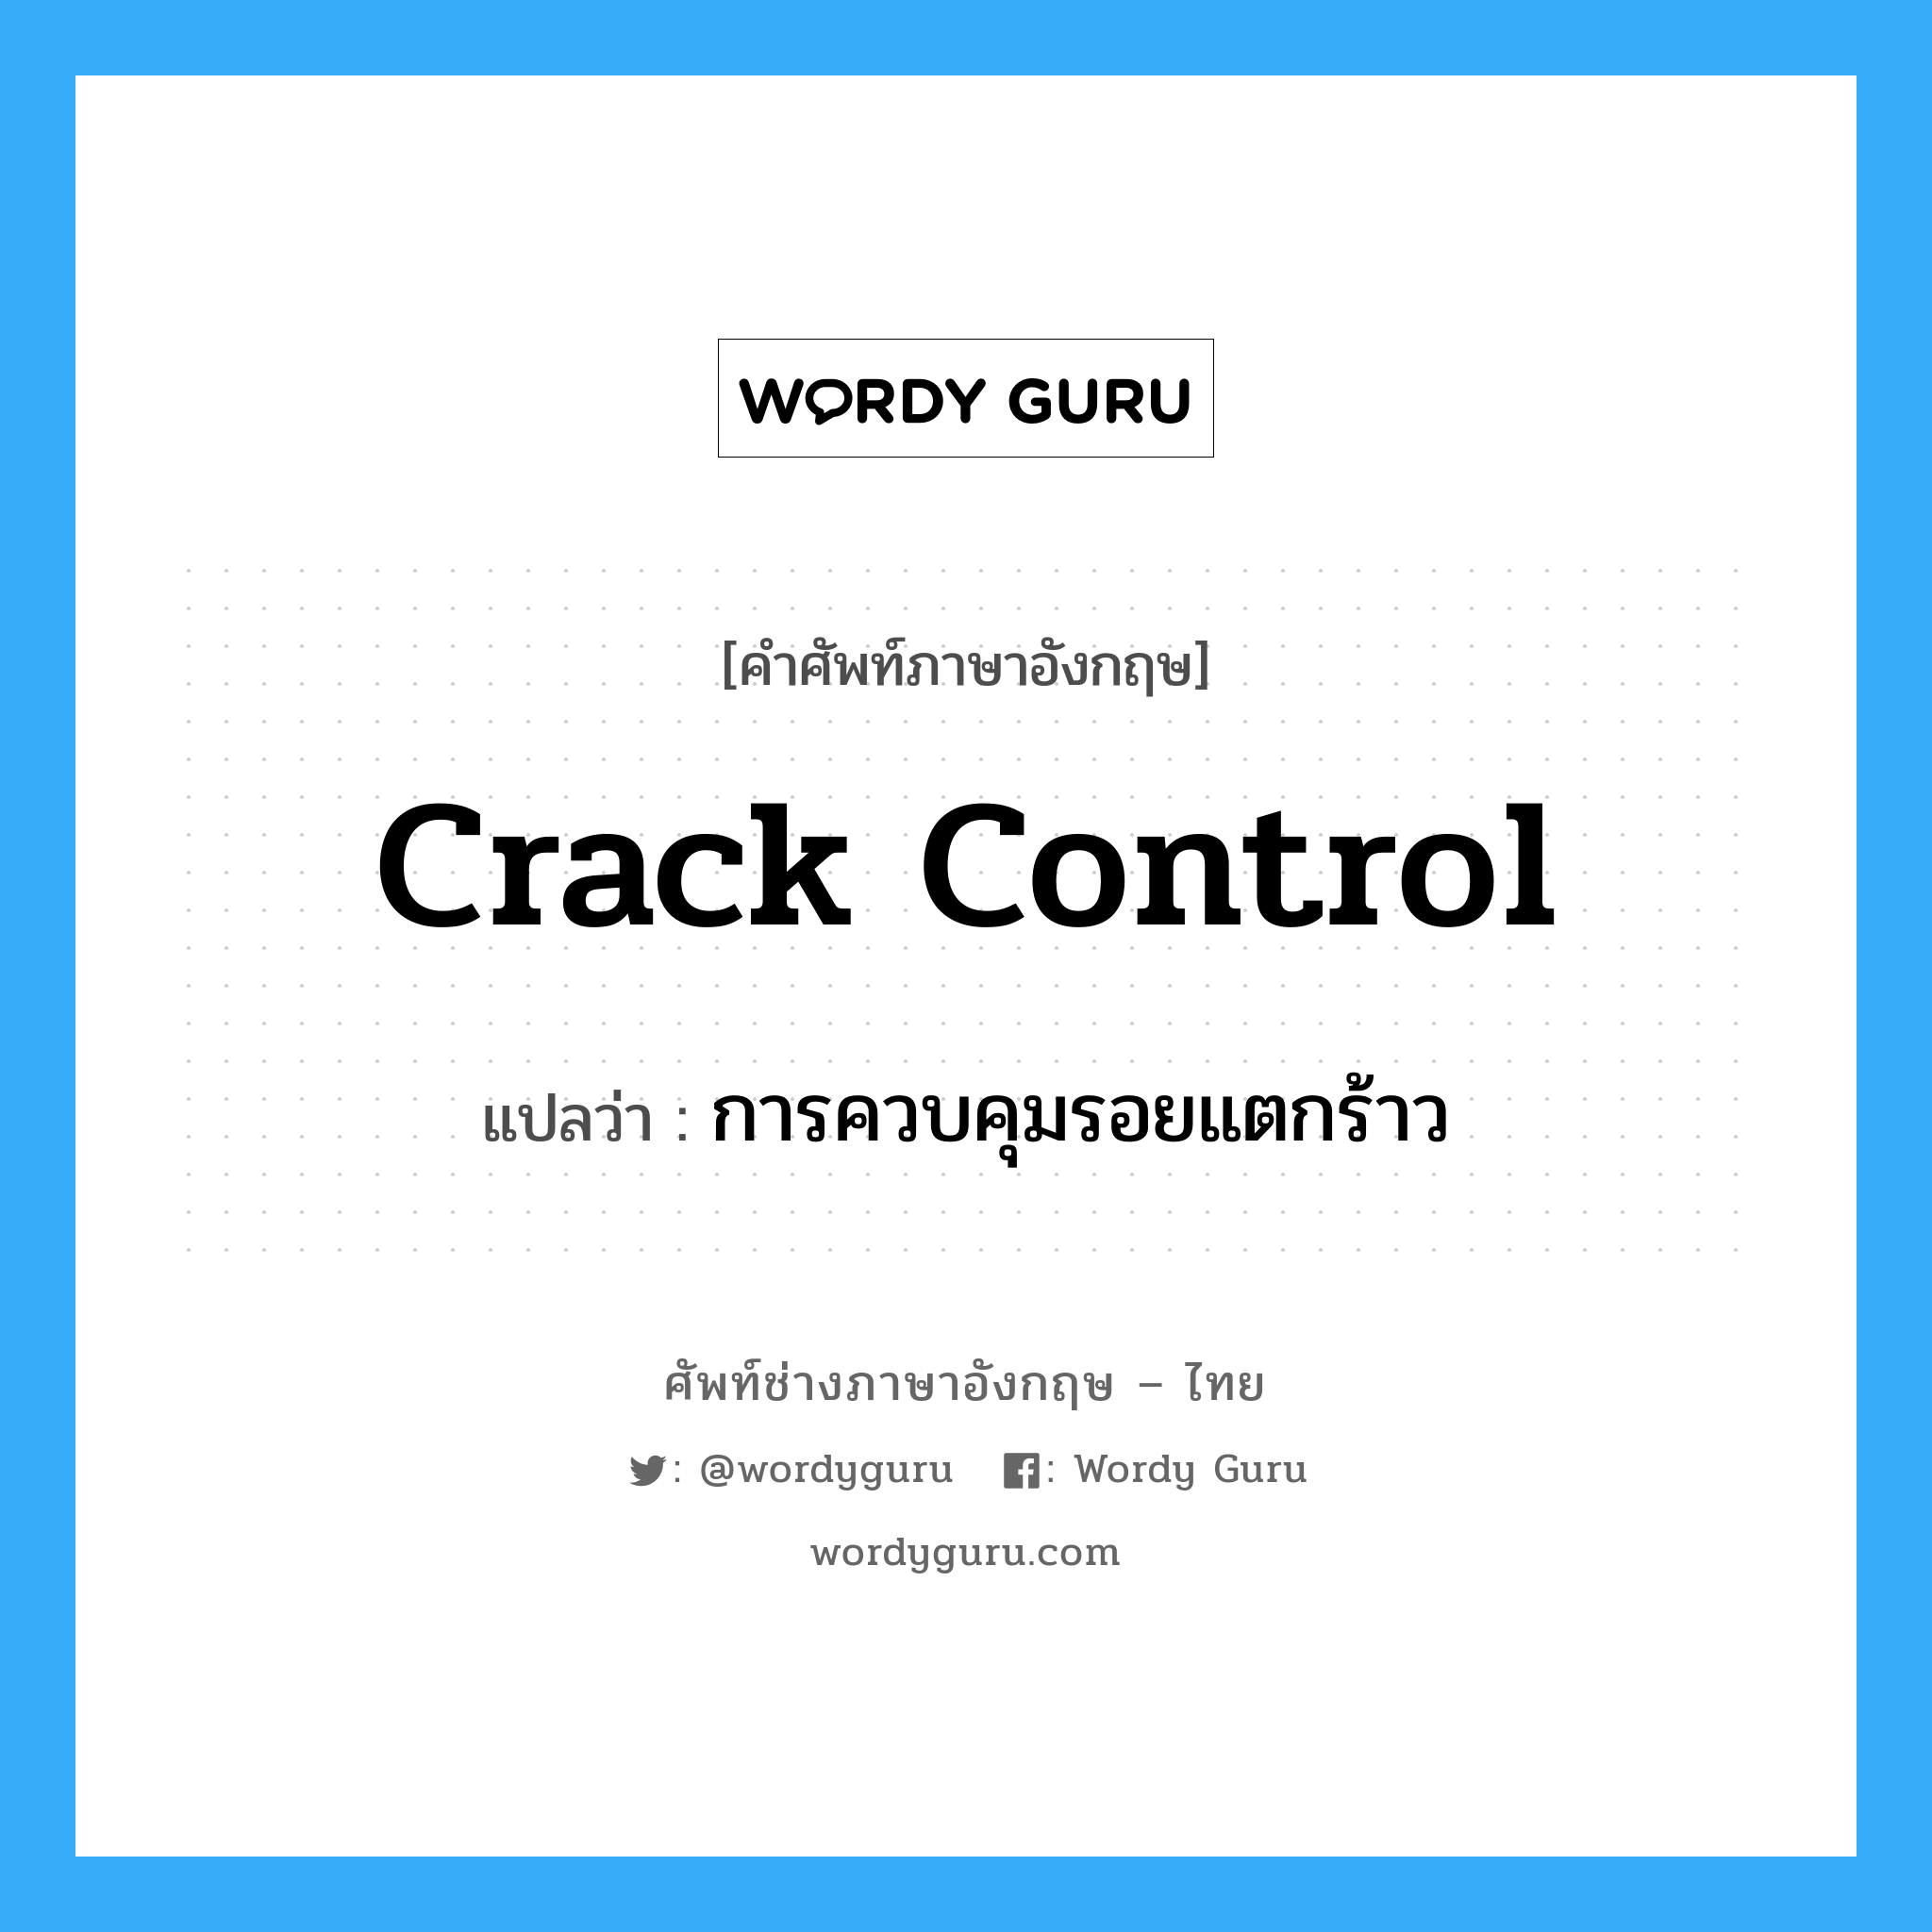 การควบคุมรอยแตกร้าว ภาษาอังกฤษ?, คำศัพท์ช่างภาษาอังกฤษ - ไทย การควบคุมรอยแตกร้าว คำศัพท์ภาษาอังกฤษ การควบคุมรอยแตกร้าว แปลว่า crack control